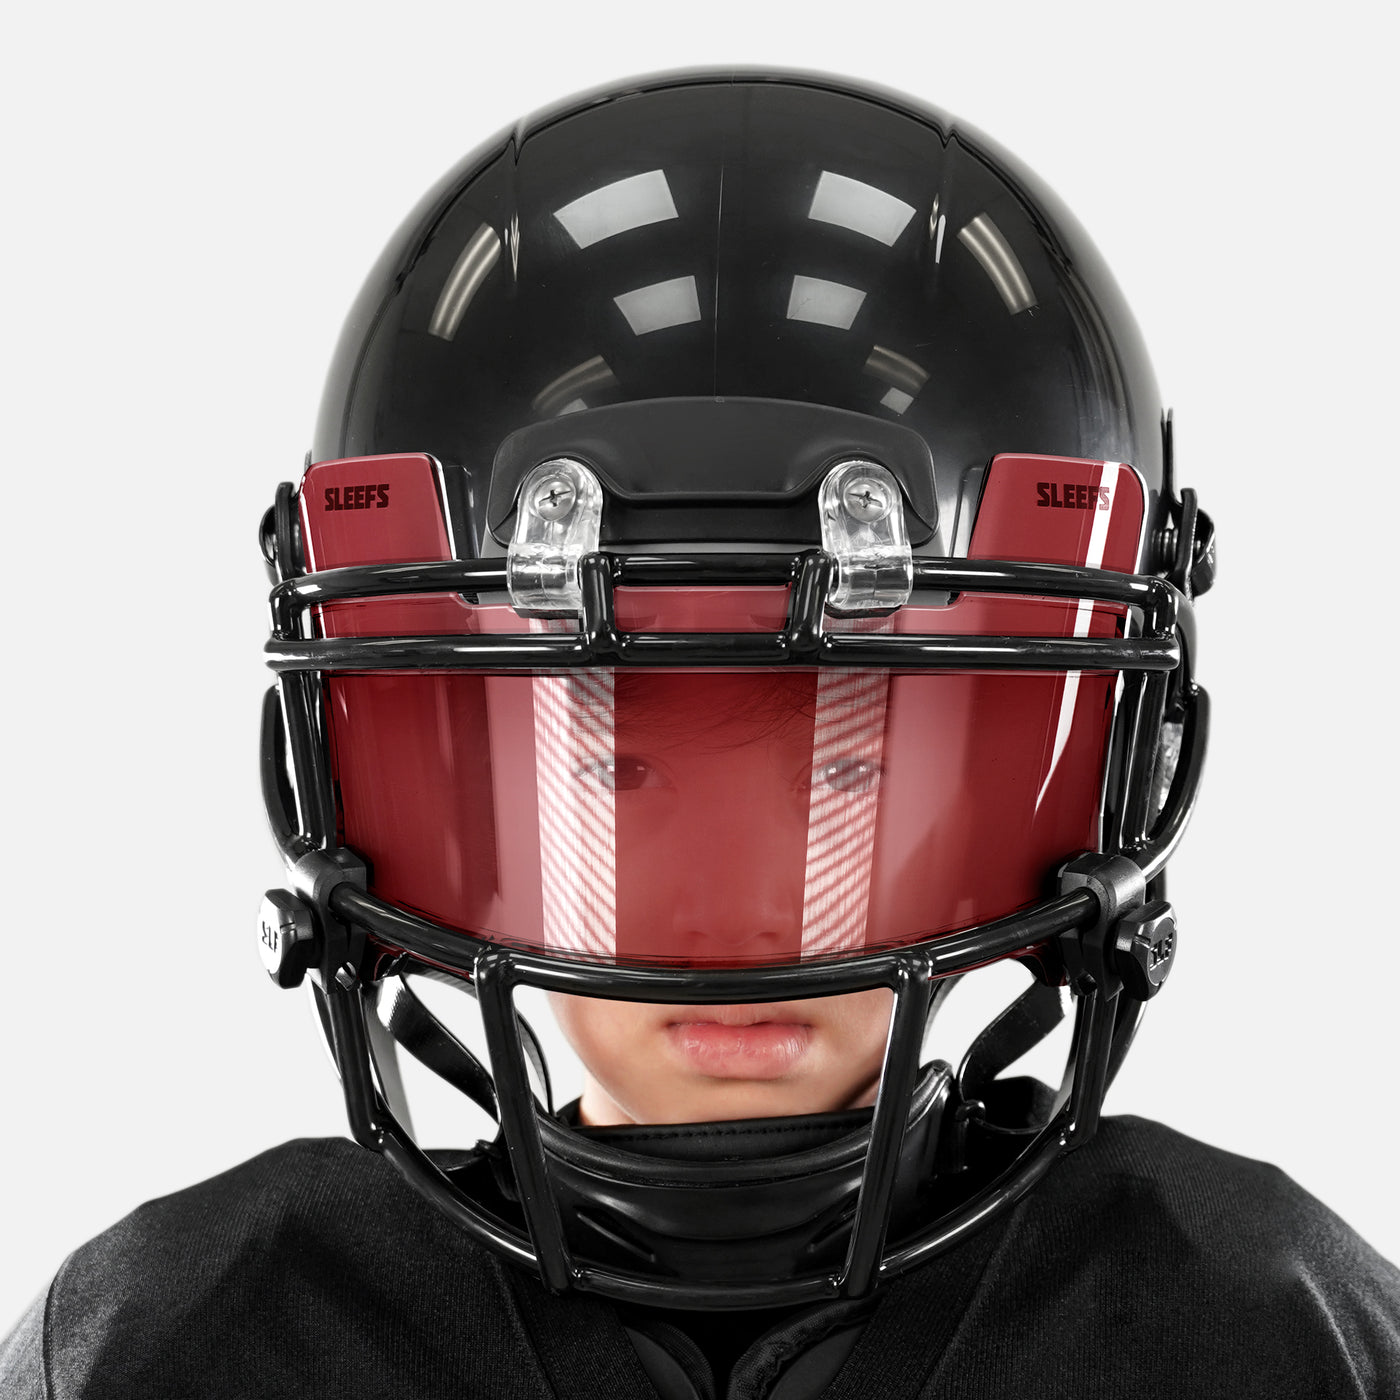 Carmine Red Clear Helmet Eye-Shield Visor for Kids